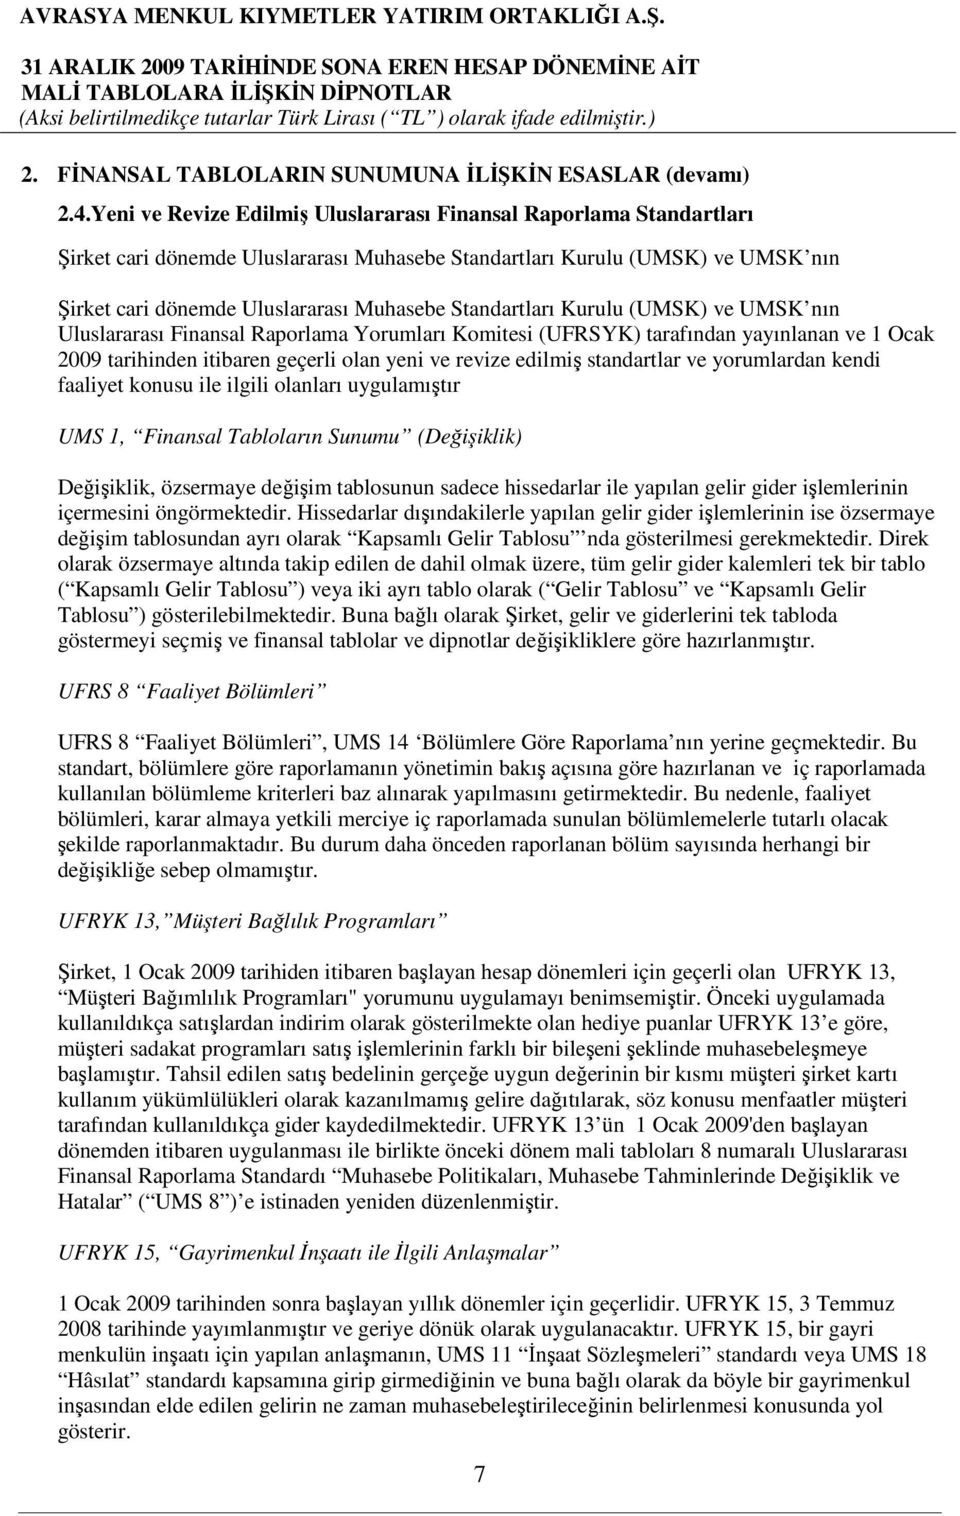 Standartları Kurulu (UMSK) ve UMSK nın Uluslararası Finansal Raporlama Yorumları Komitesi (UFRSYK) tarafından yayınlanan ve 1 Ocak 2009 tarihinden itibaren geçerli olan yeni ve revize edilmiş